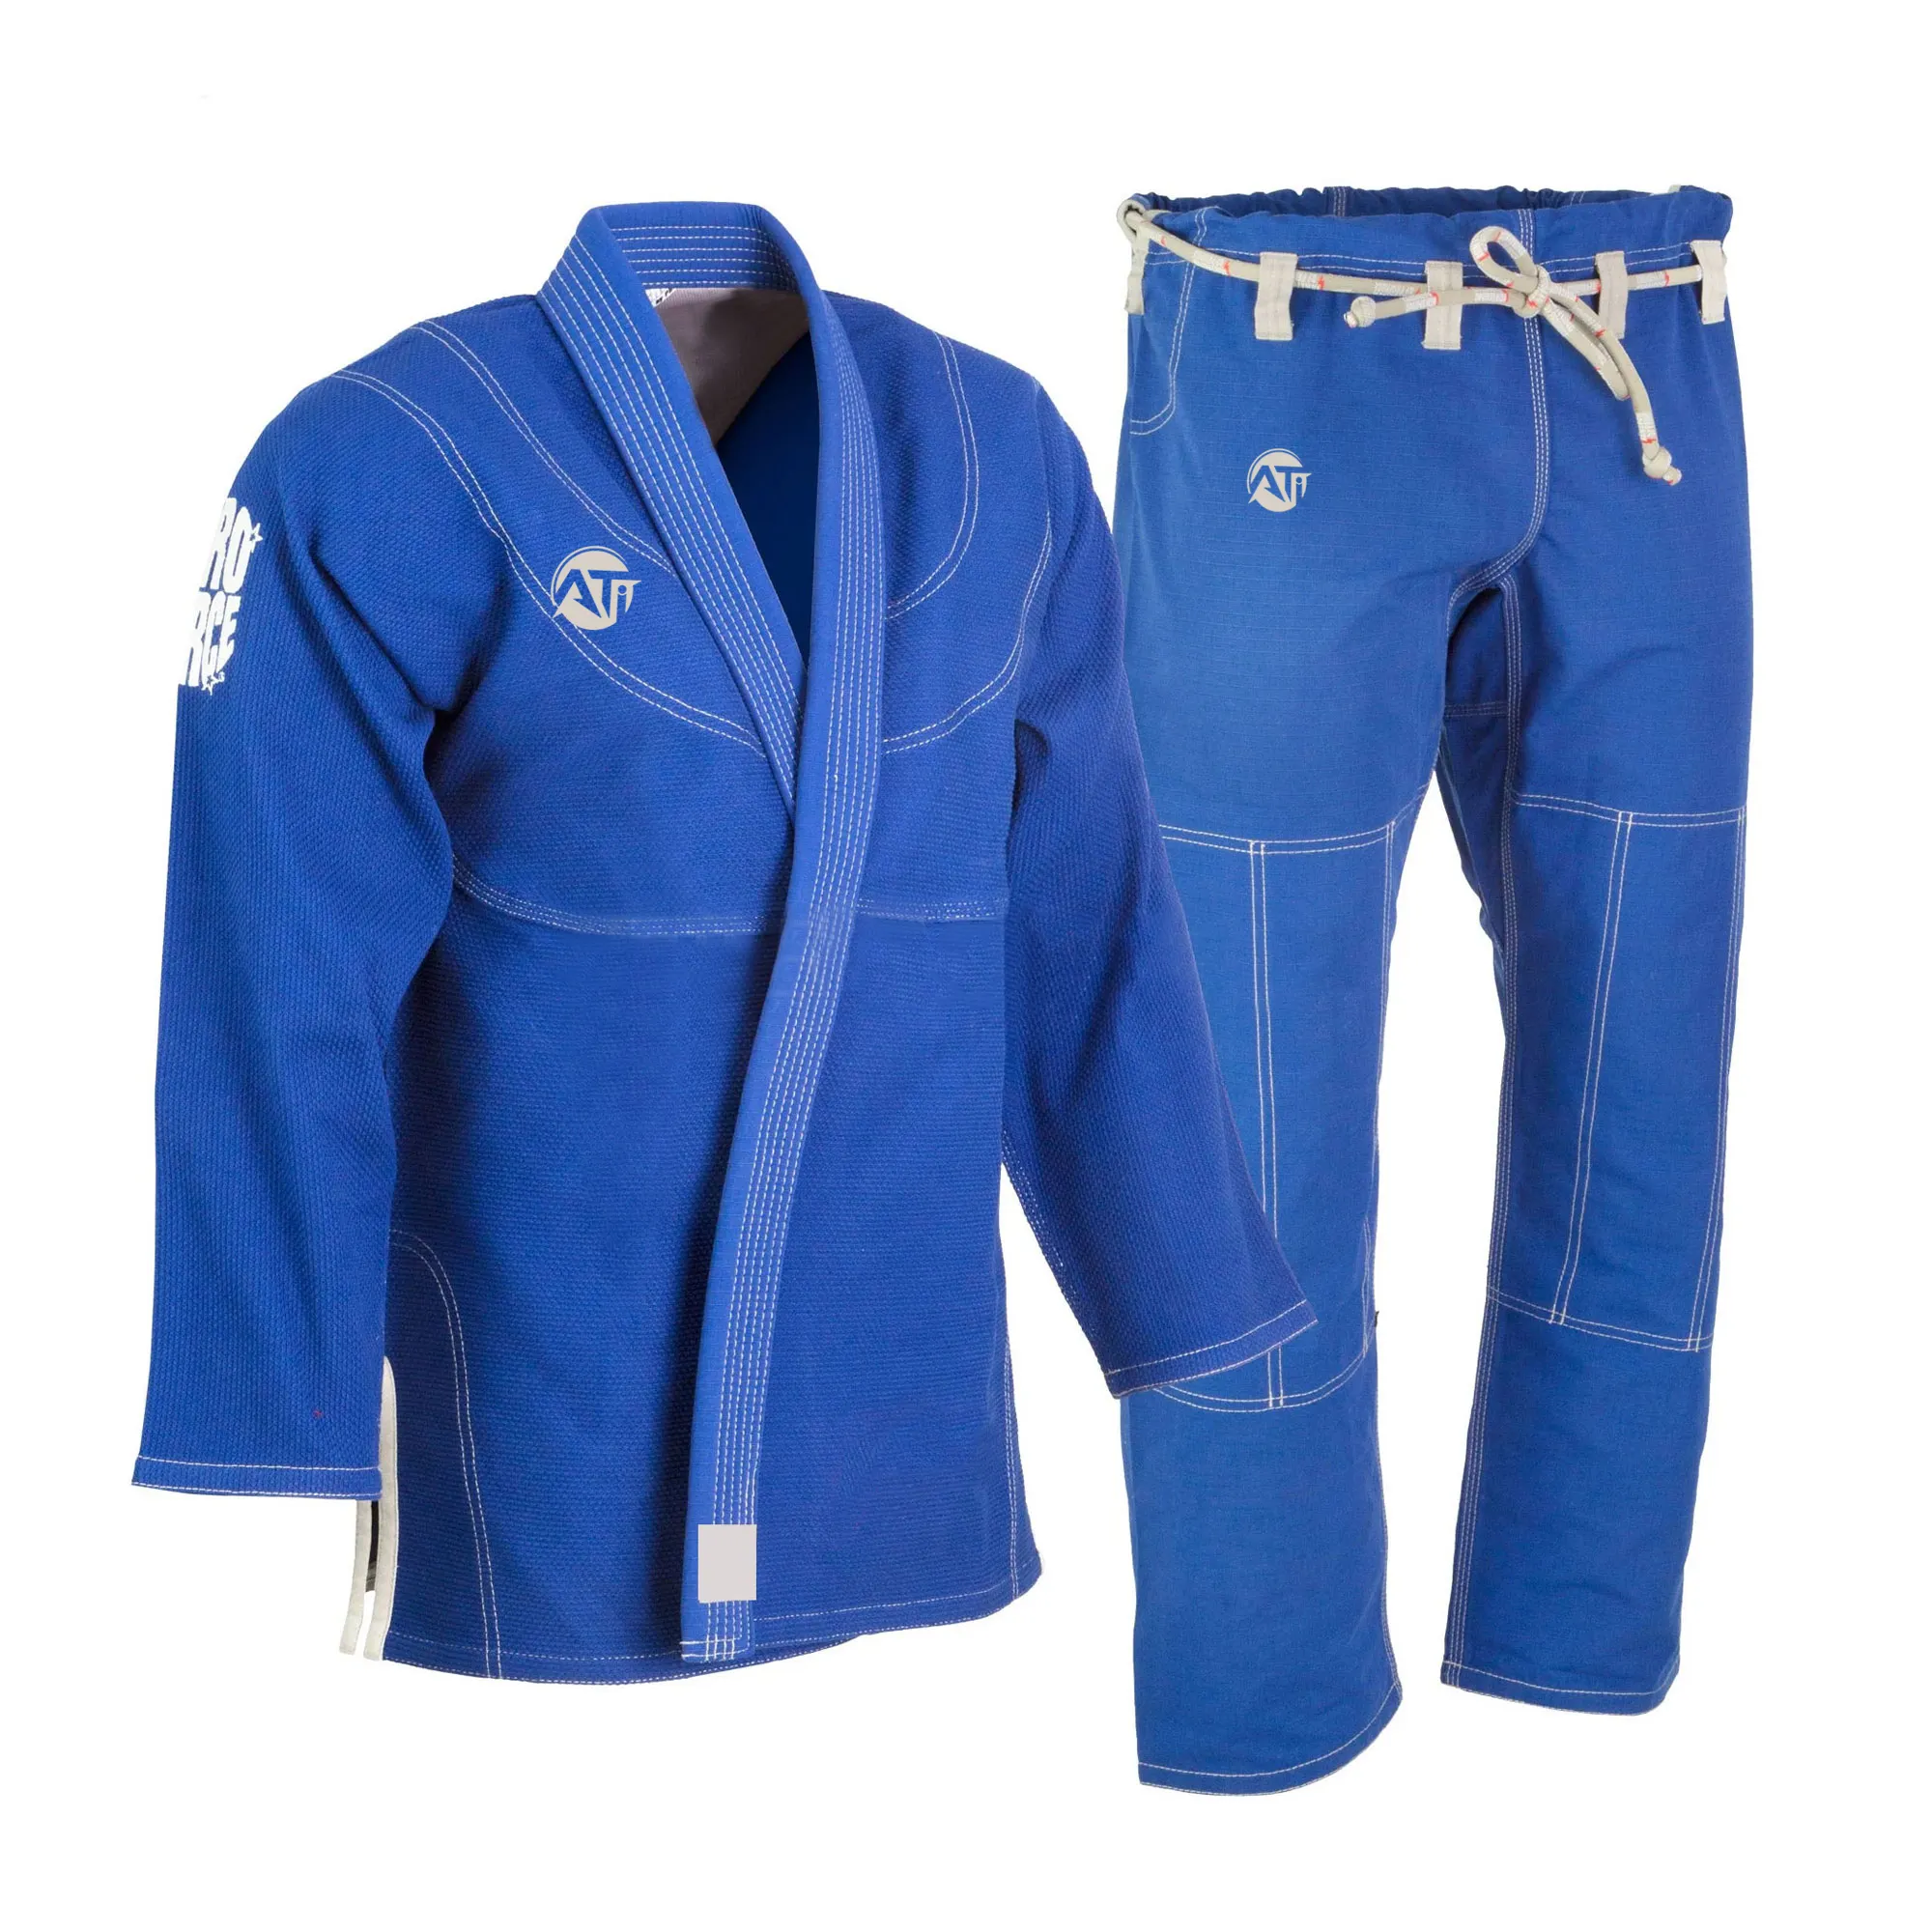 ชุดเครื่องแบบคาราเต้ GI ป่าน BJJ GI ชุดเครื่องแบบบราซิลเลี่ยน Jitsu Jitsu suitsgi สูทบราซิลเลียน Jitsu ชุดกิโมโนเครื่องแบบสีน้ำเงิน